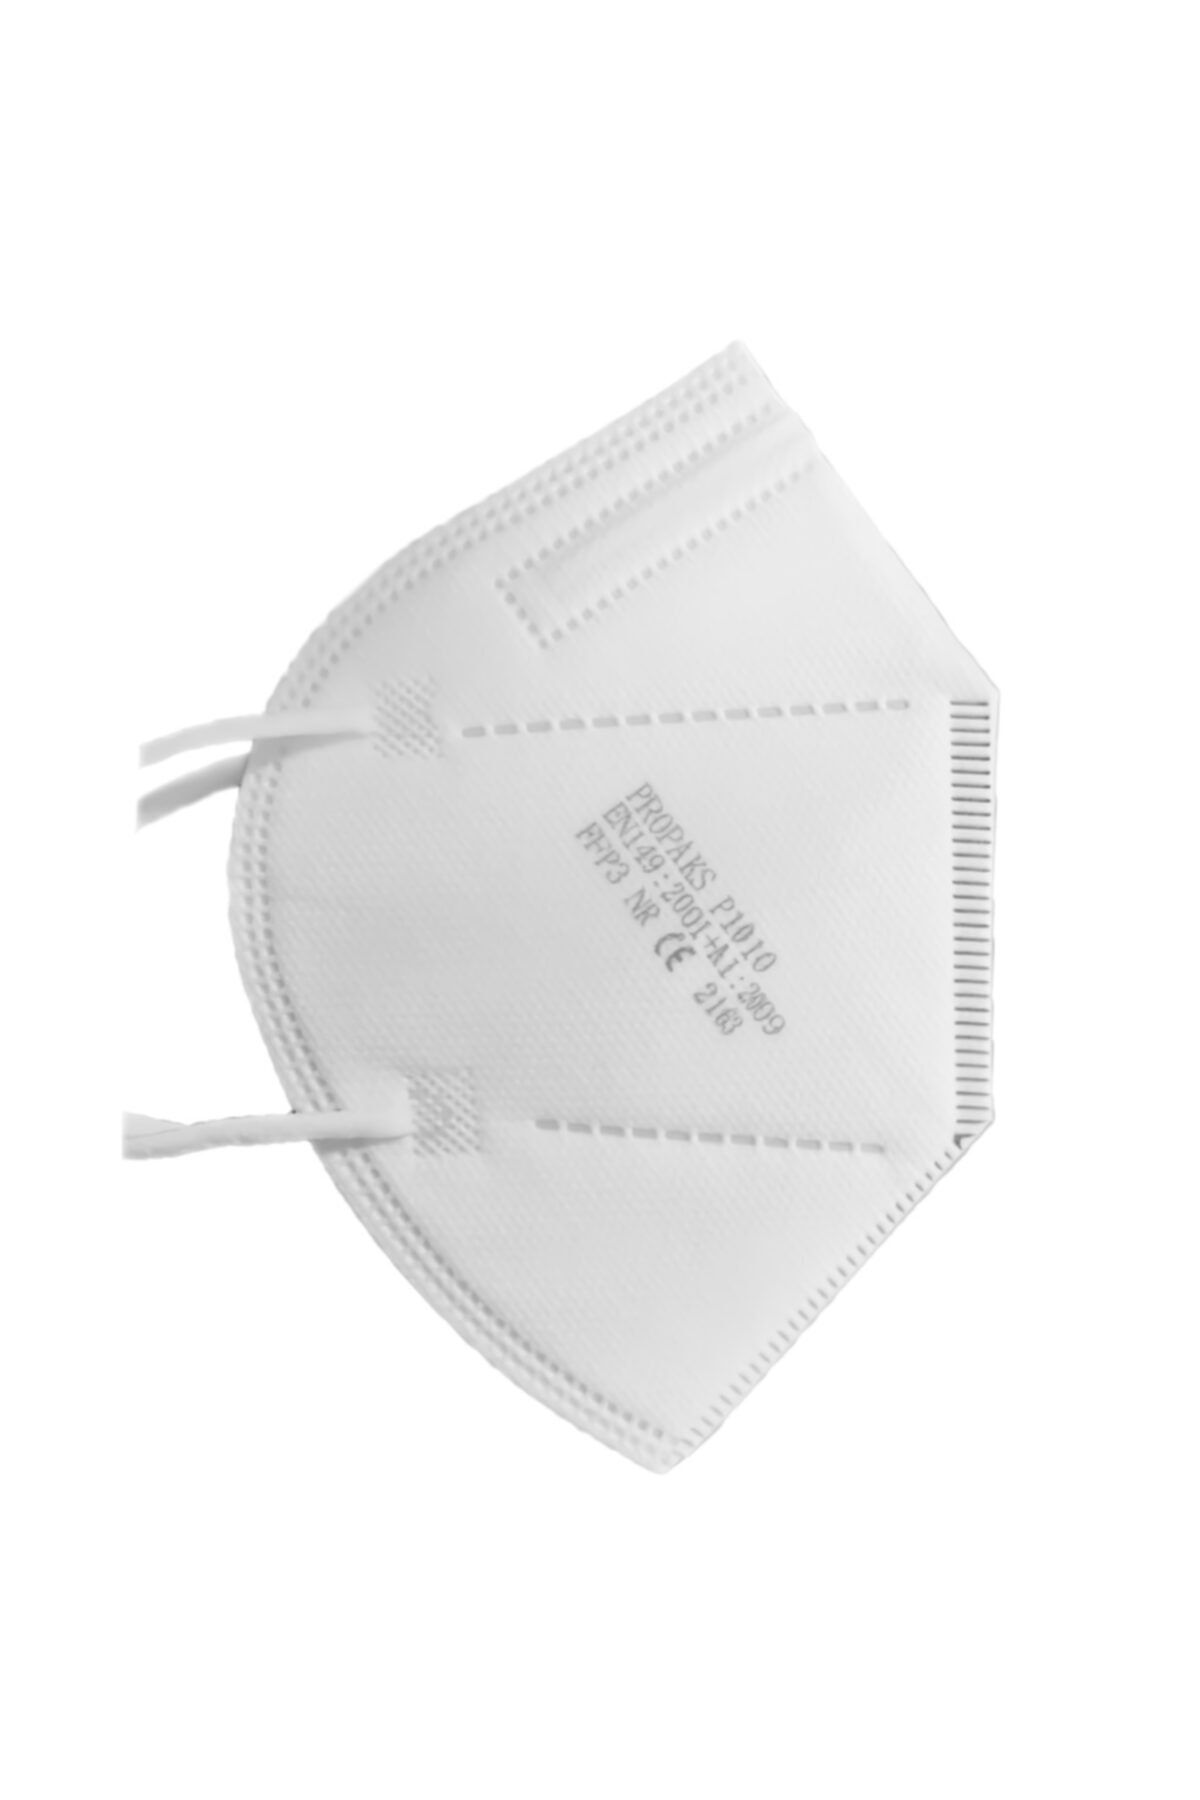 Cml Ffp2 Beyaz 10 Adet Protective Mask